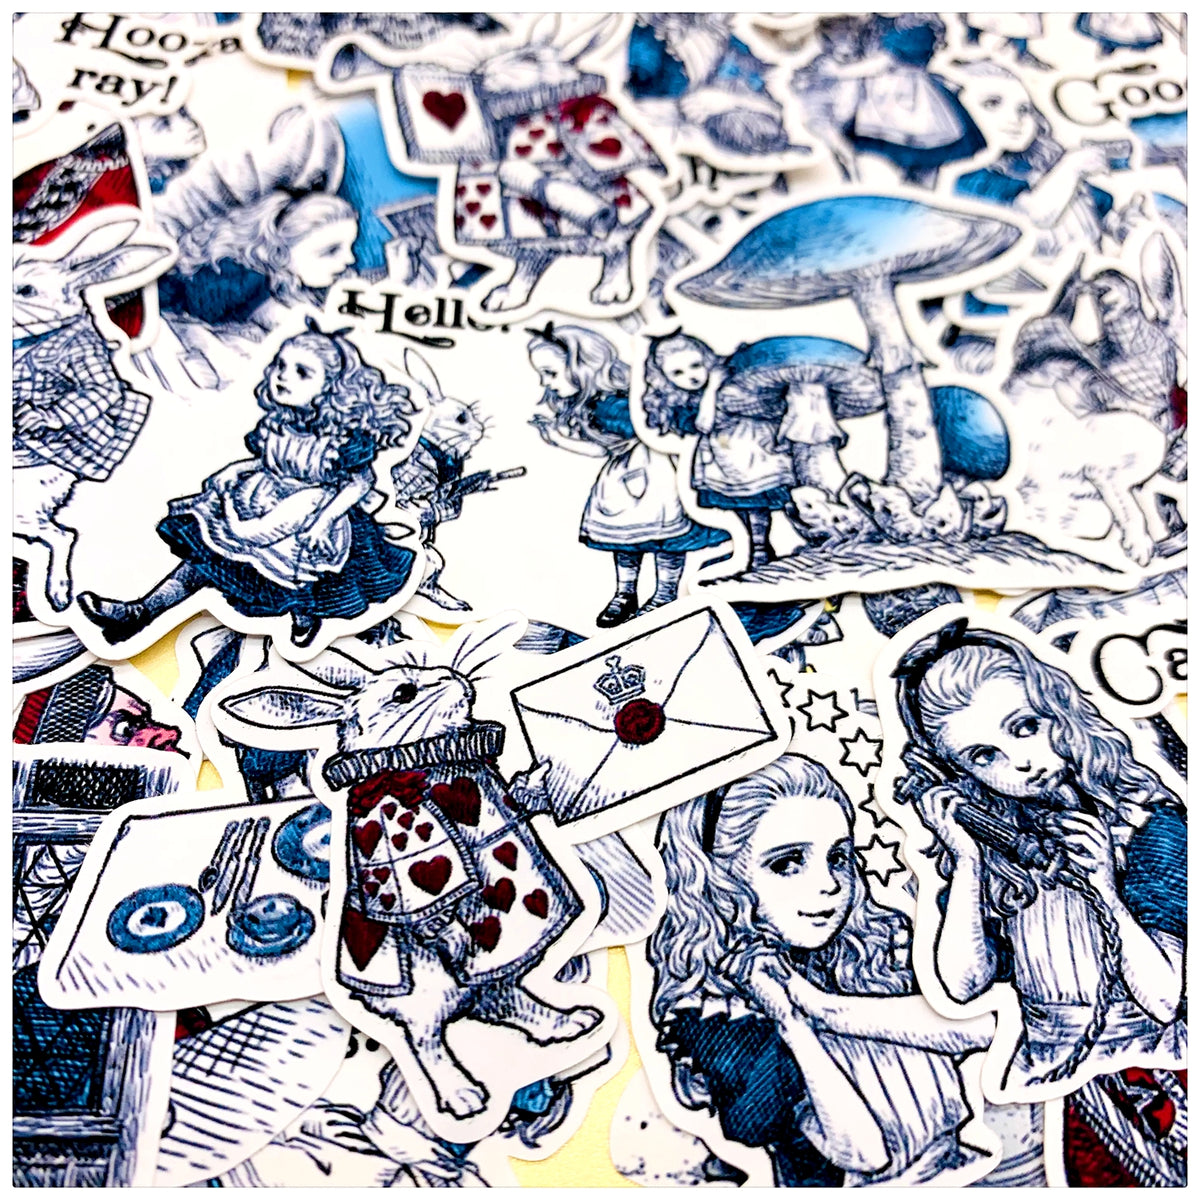 Handbook Sticker Pack Alice in Wonderland 40 pieces Handbook Stickers Decorative Diary 3